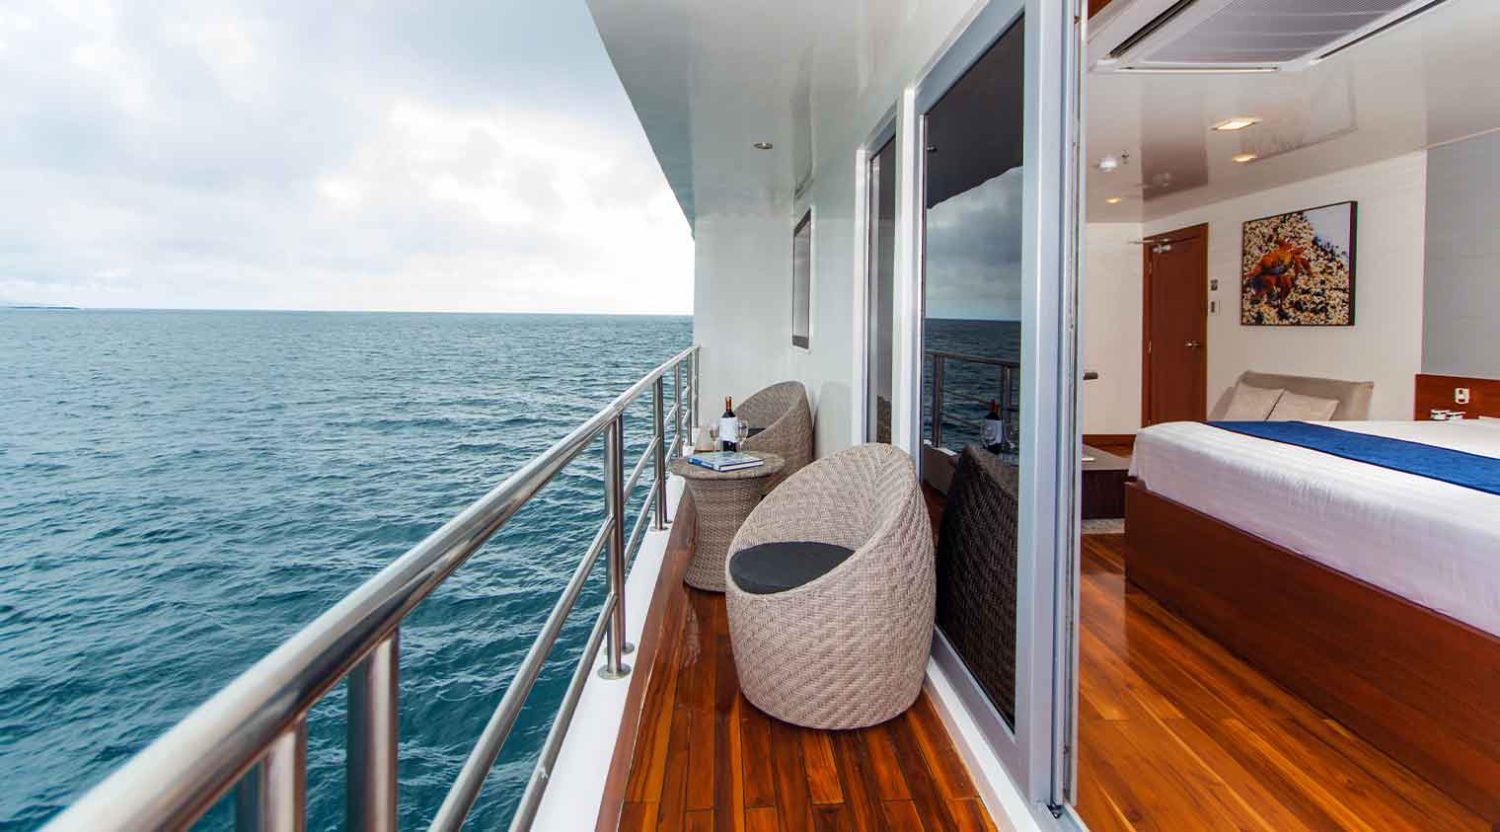 Infinity Yacht bedroom balcony of galapagos islands tours